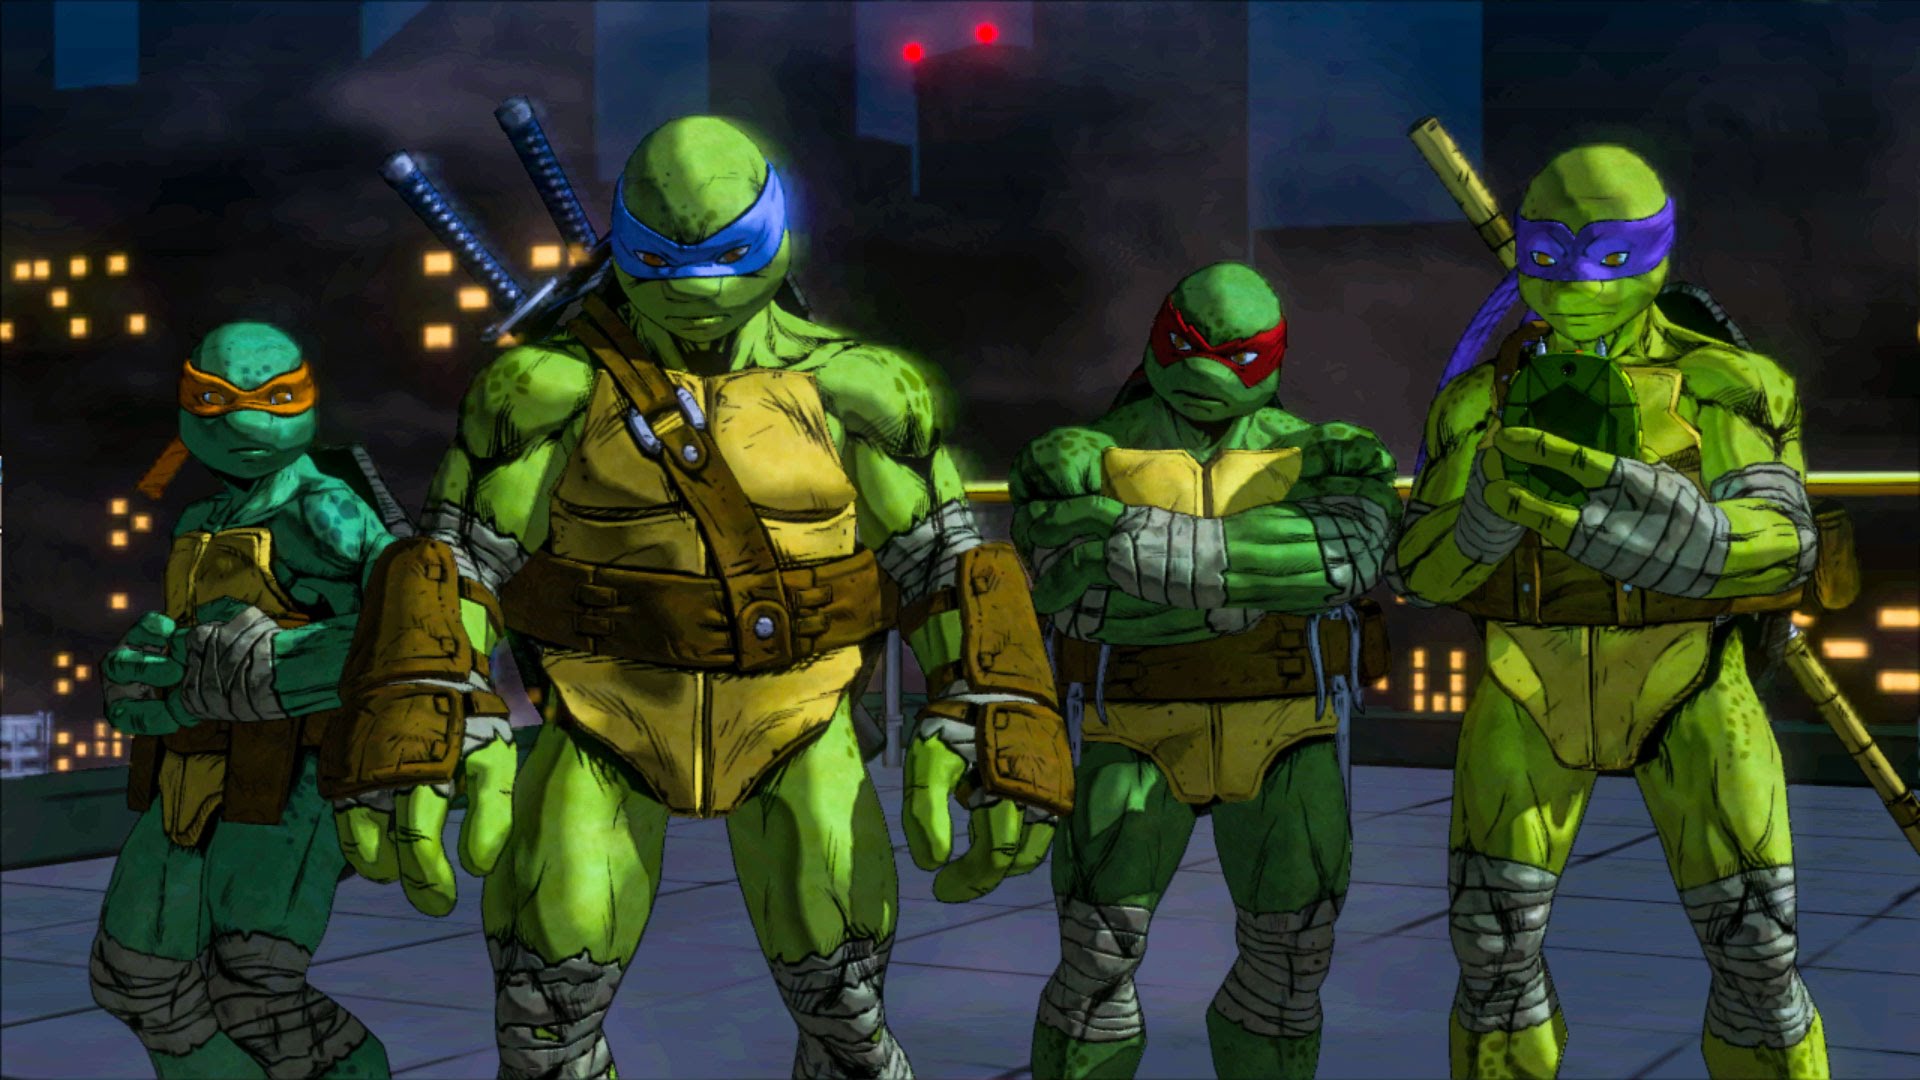 “Teenage Mutant Ninja Turtles: Mutants In Manhattan” Release Date Announced - Turtles Fighting the Foot in May